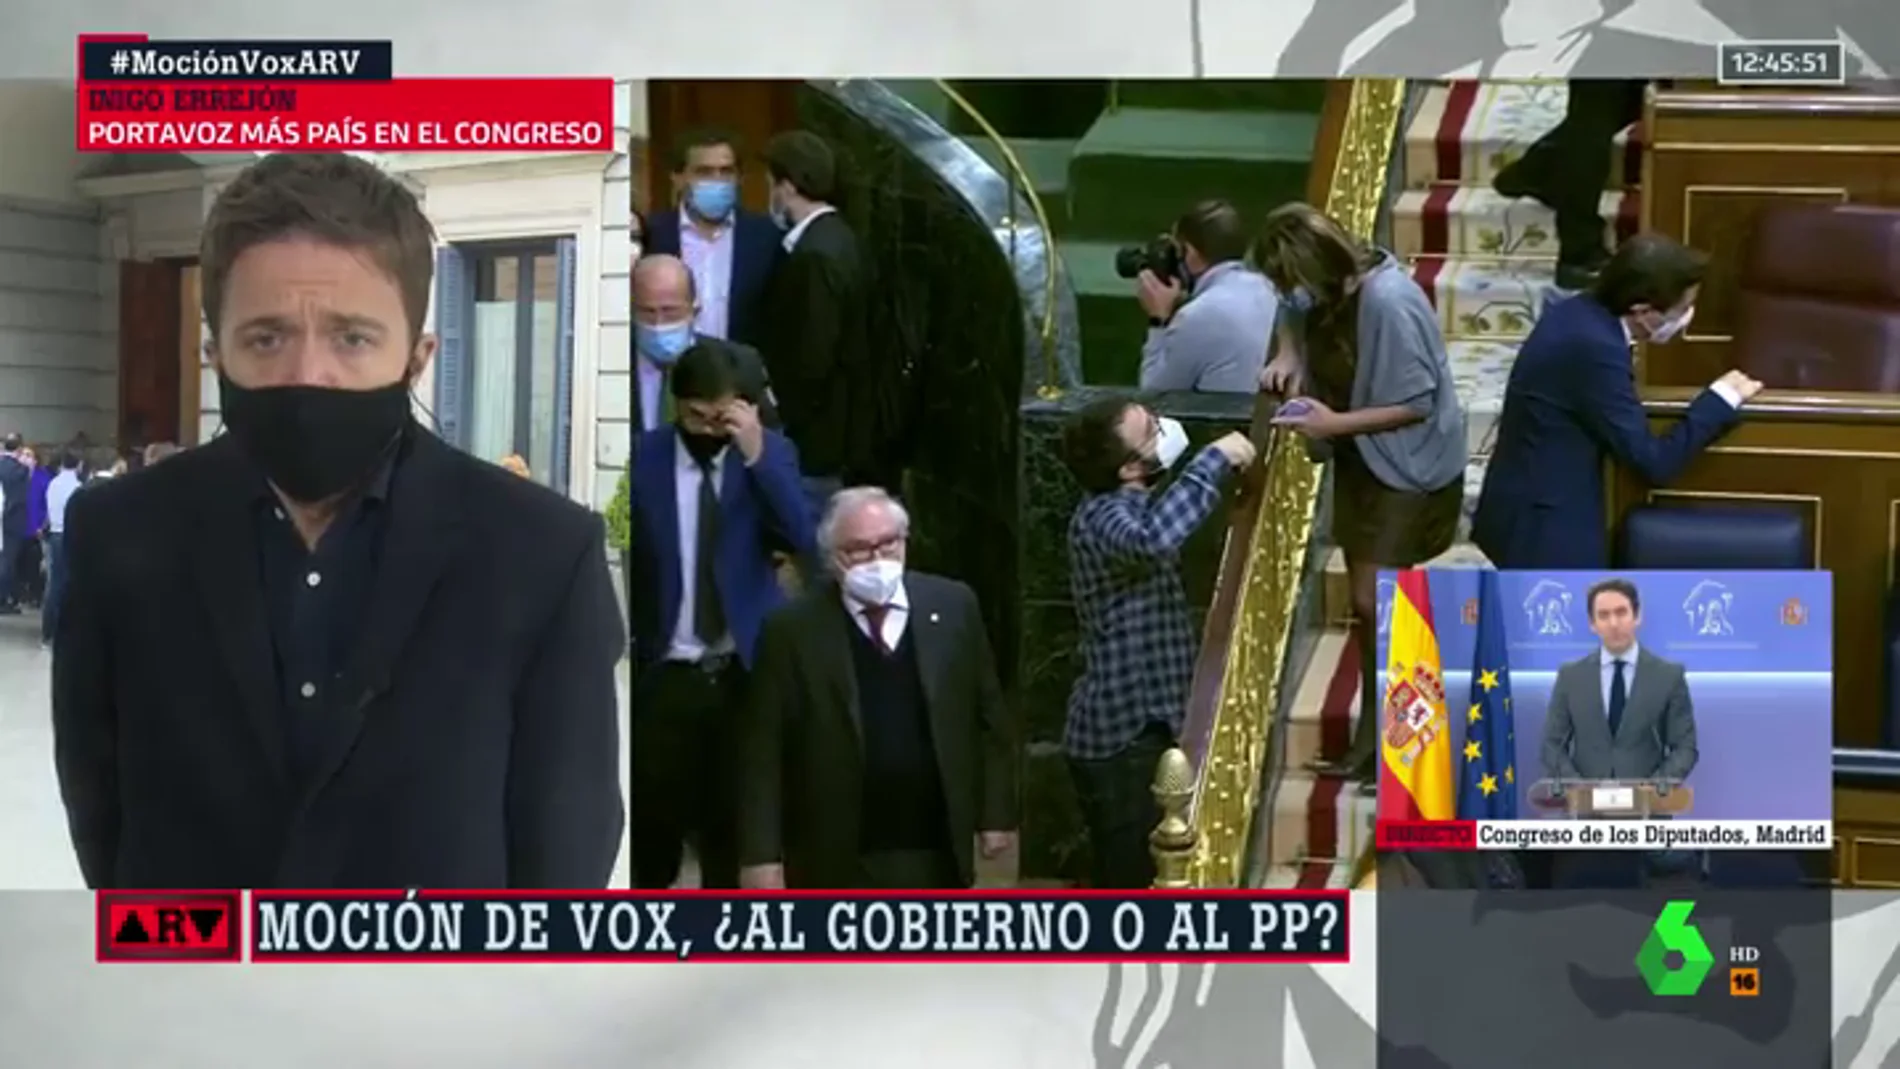 Errejón reprocha la ambiguedad del PP ante la moción de censura de Vox: "Ojalá no se hubiera pasado toda una semana dudando"